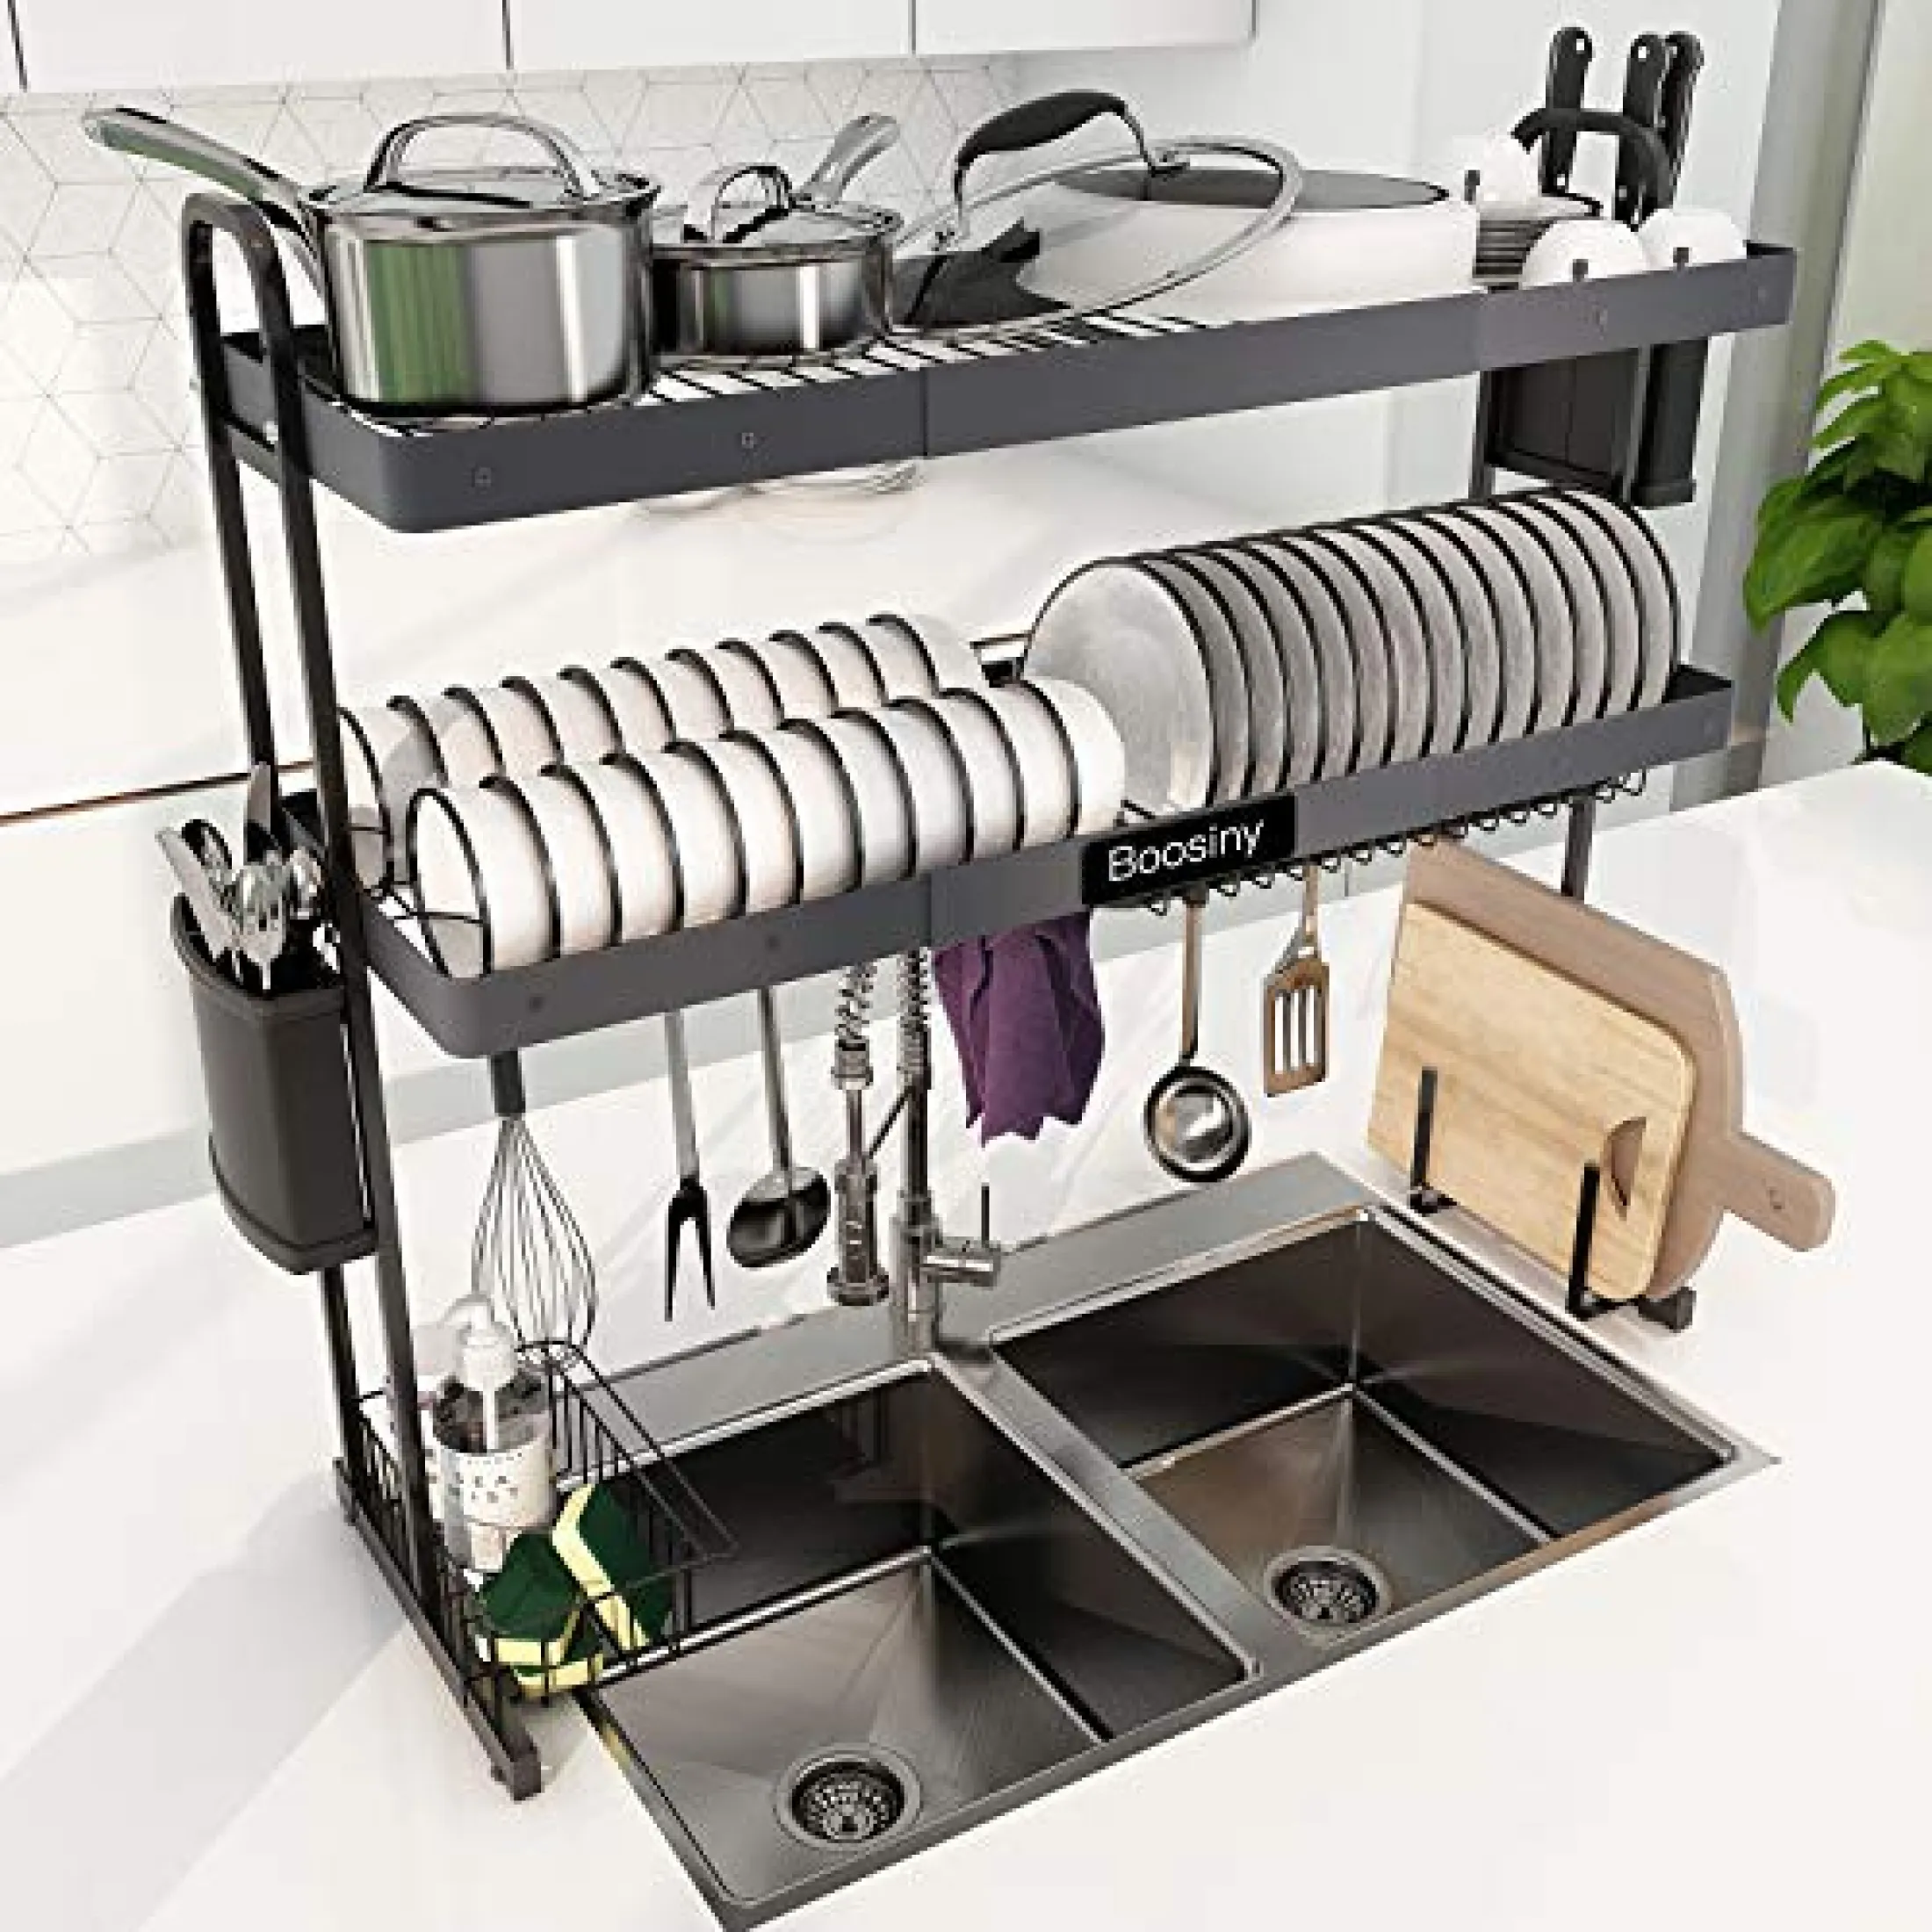 2 Tier Dish Drainer Rack Tray Plate Storage Over Sink Kitchen Utensils Holder